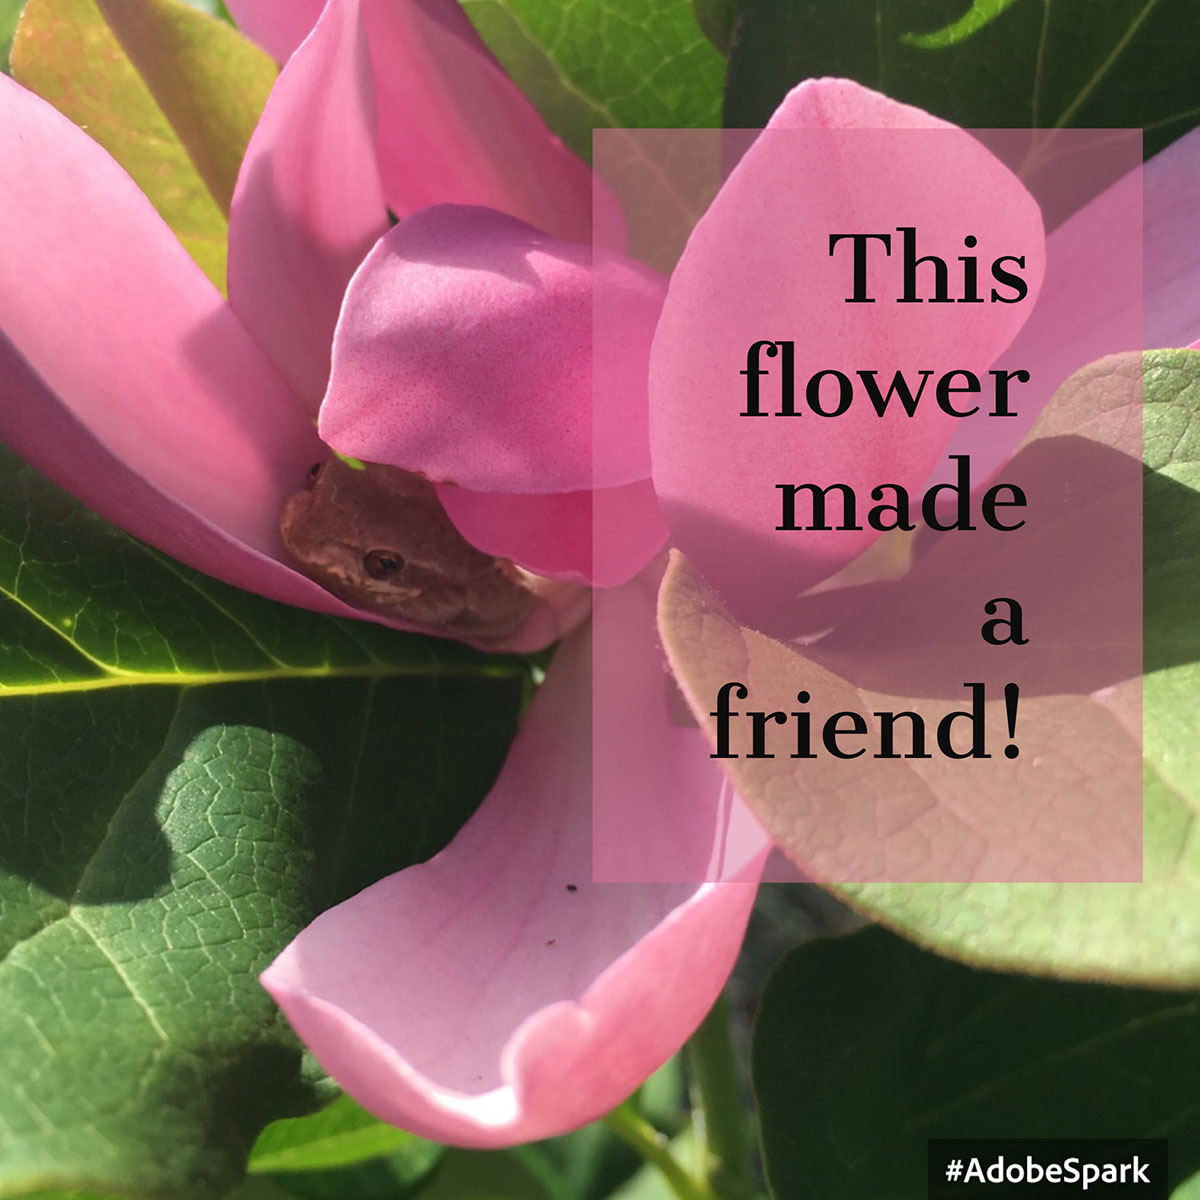 This flower made a friend! This flower made a friend!